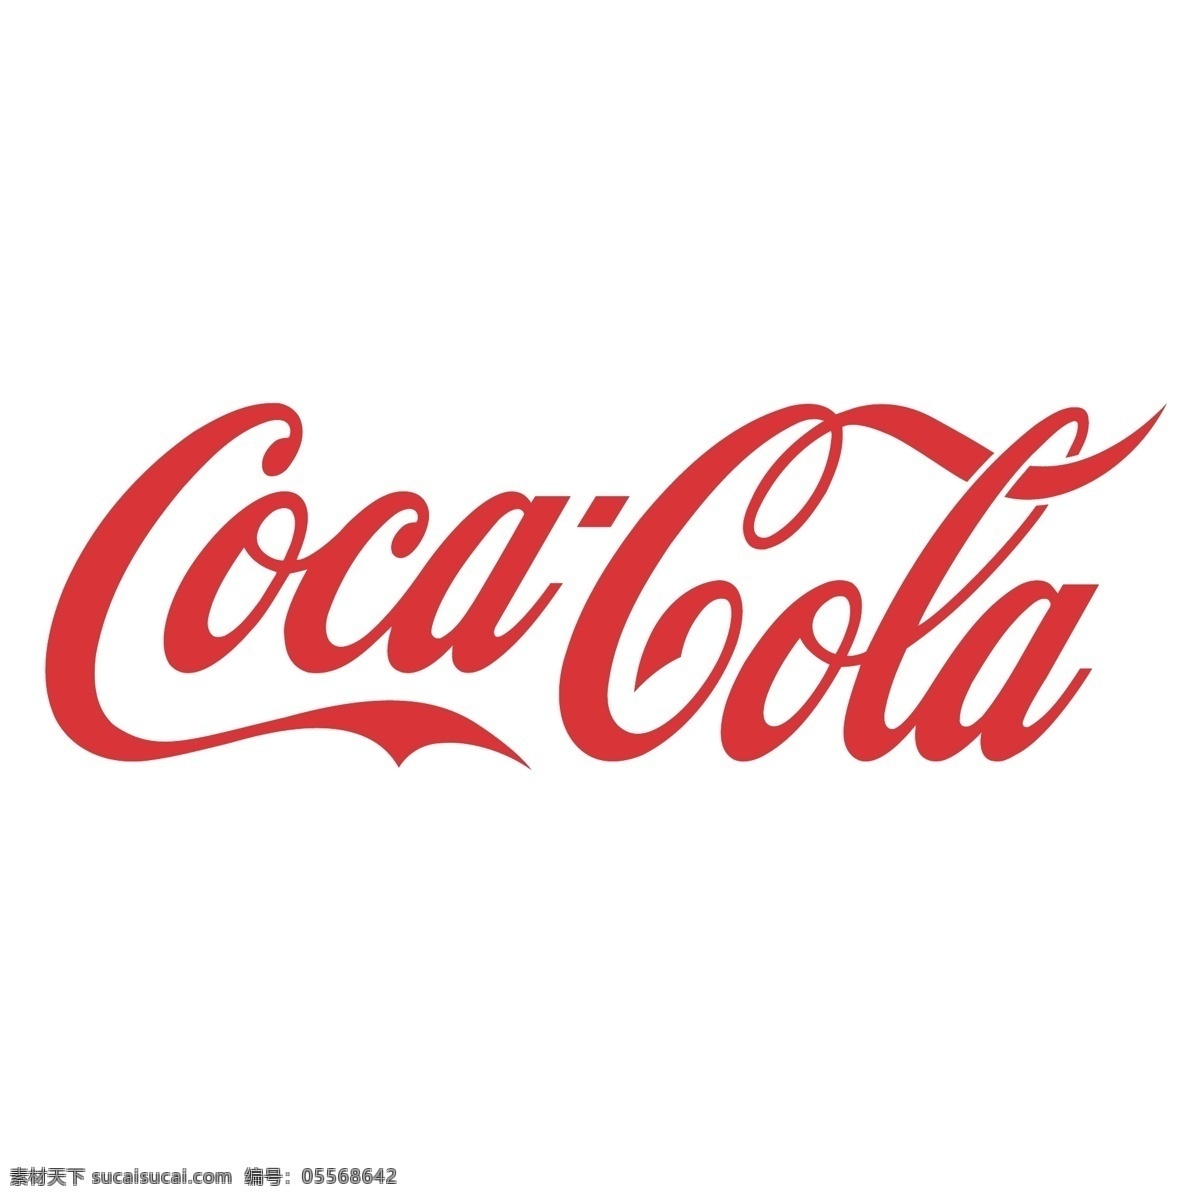 可口可乐 logo cocacola 可口可乐图案 可口可乐标志 cocacolalogo 标志图标 公共标识标志